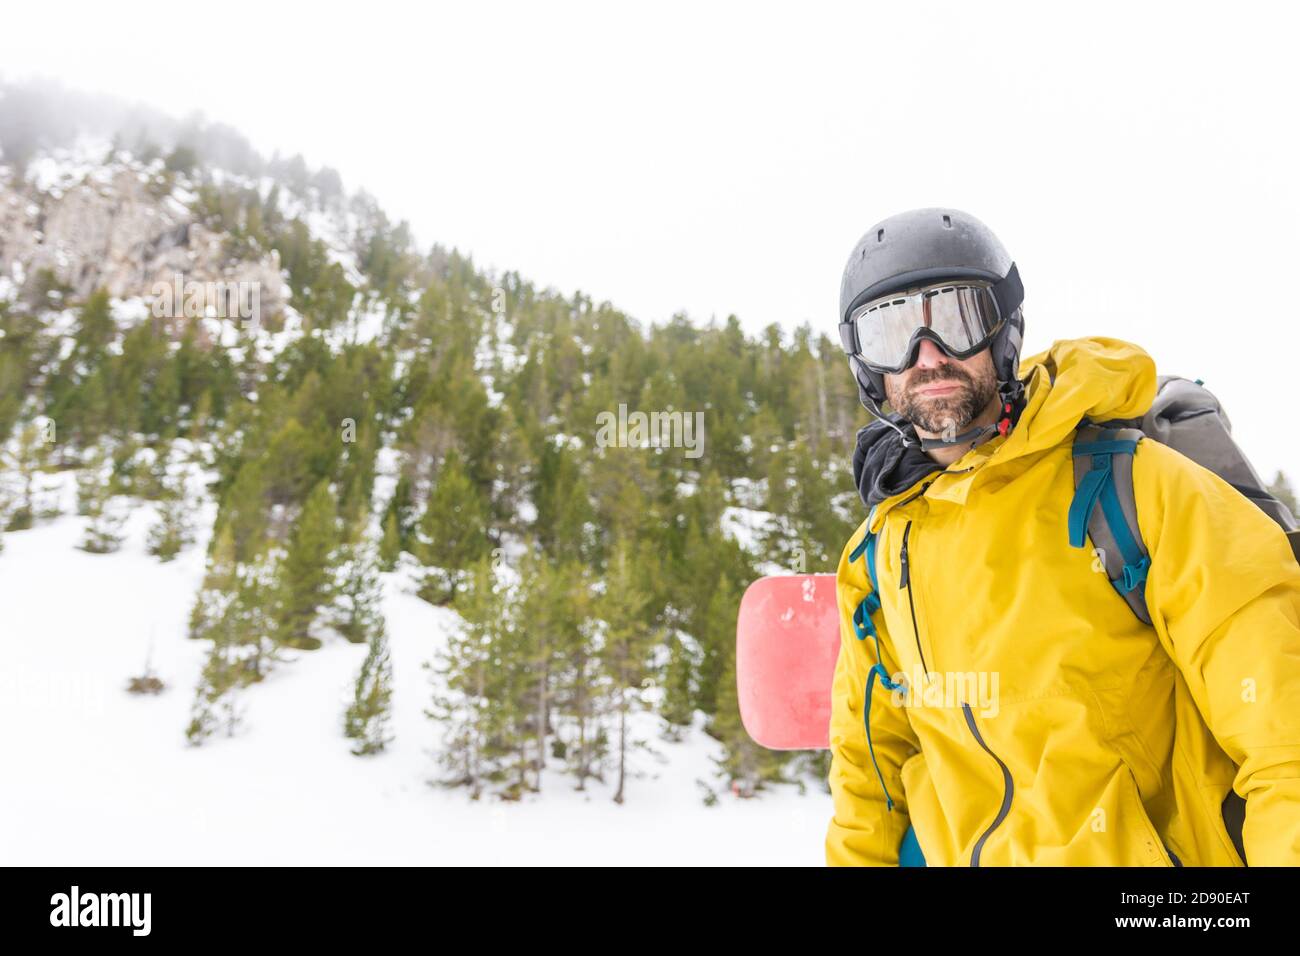 Free rider godendo la neve e la sua snowboard su un piste da sci Foto Stock